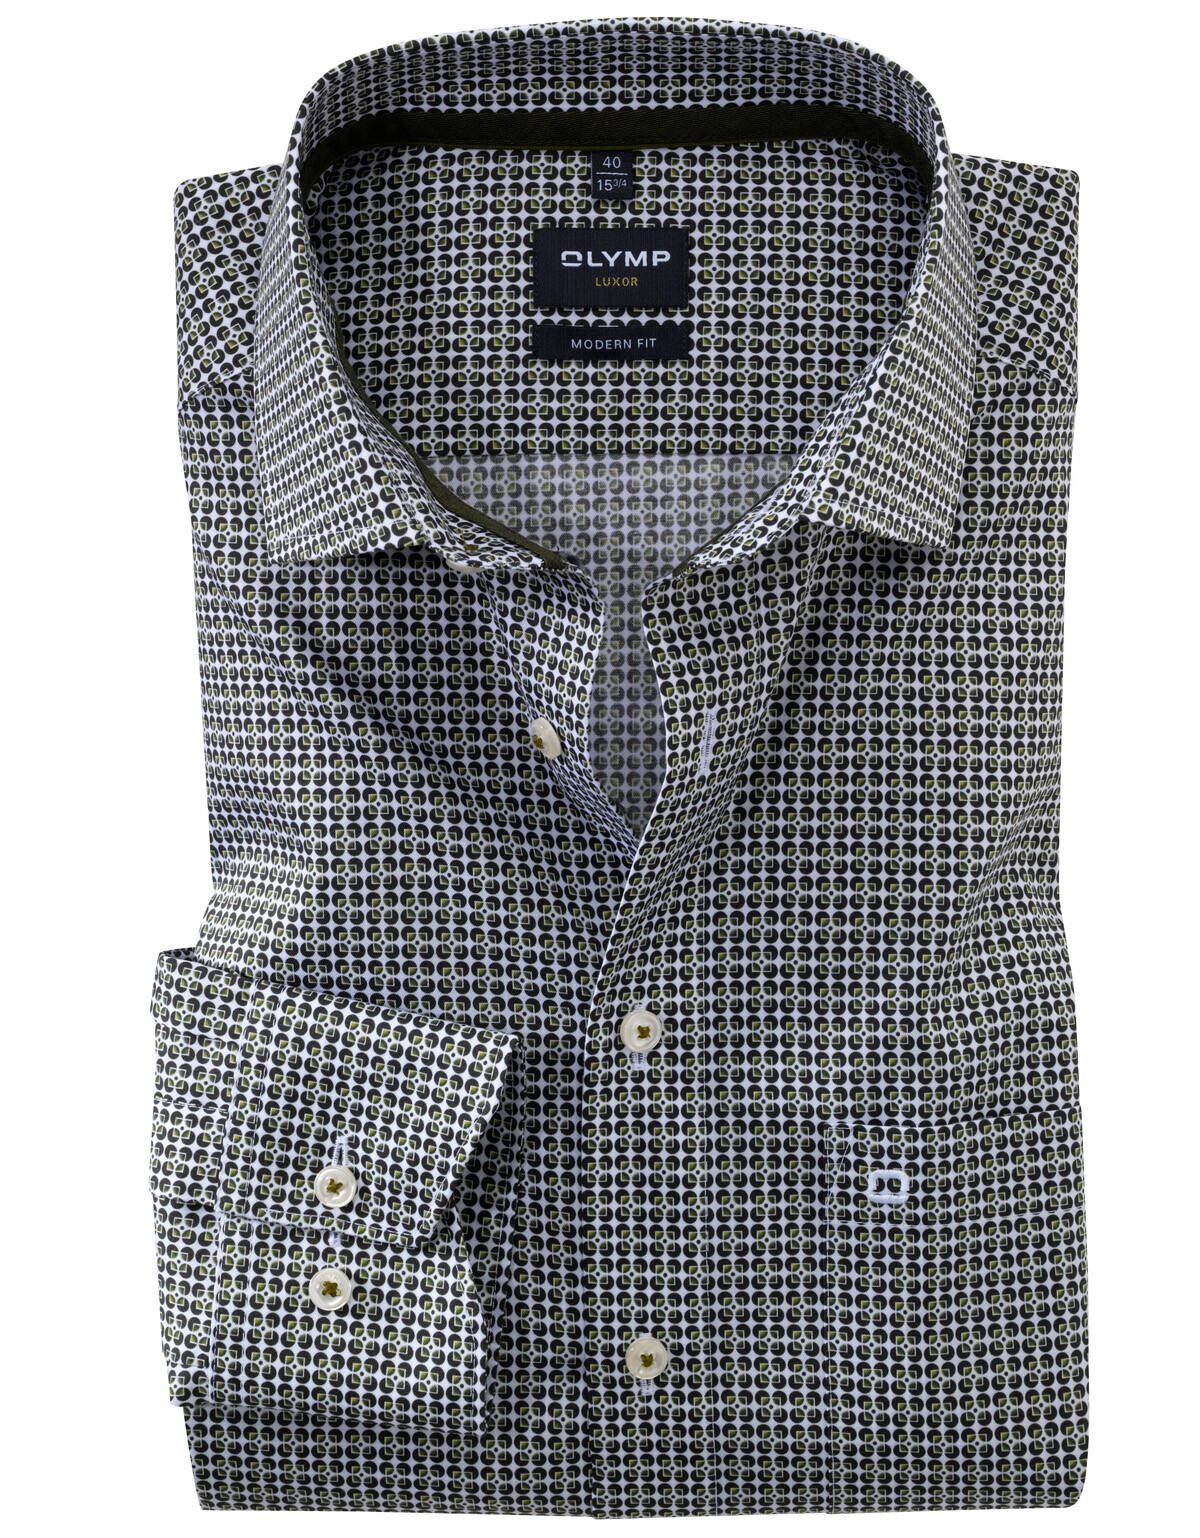 Рубашка мужская с принтом OLYMP Luxor, modern fit[ЗЕЛЁНЫЙ]